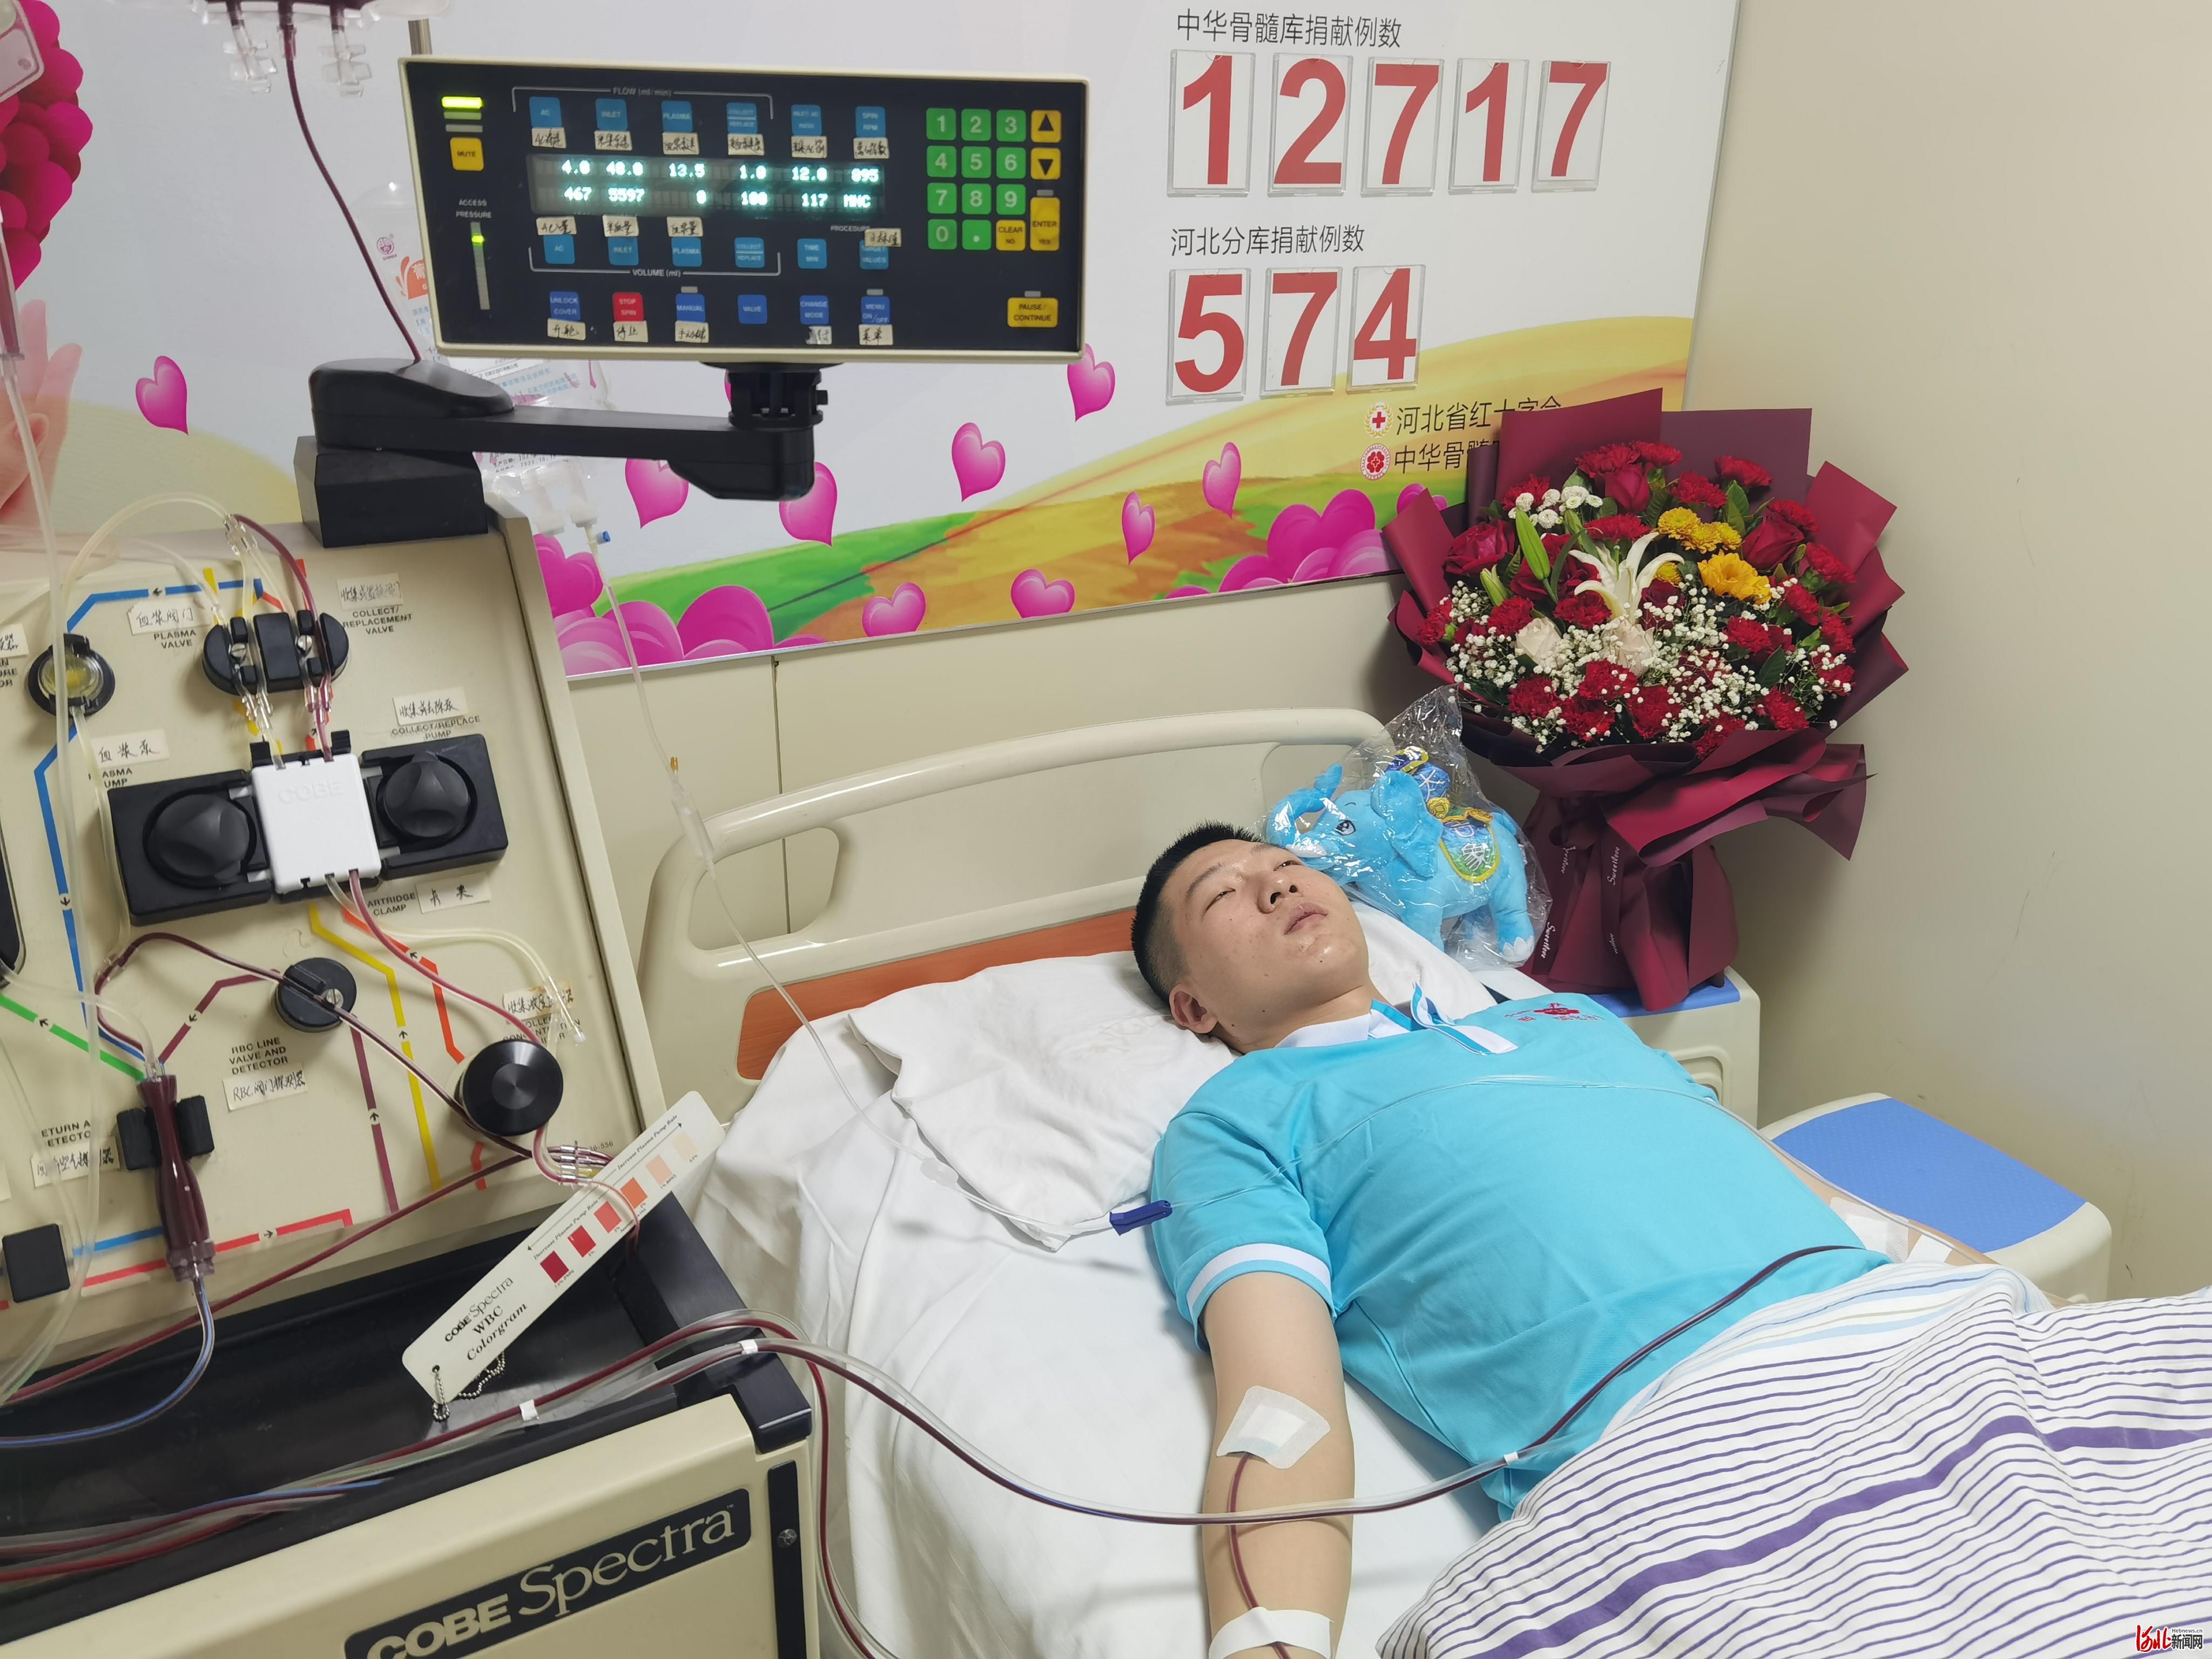 河北医科大学|“入伍时就做好了为人民奉献的准备！” 军人小伙儿成功捐献造血干细胞